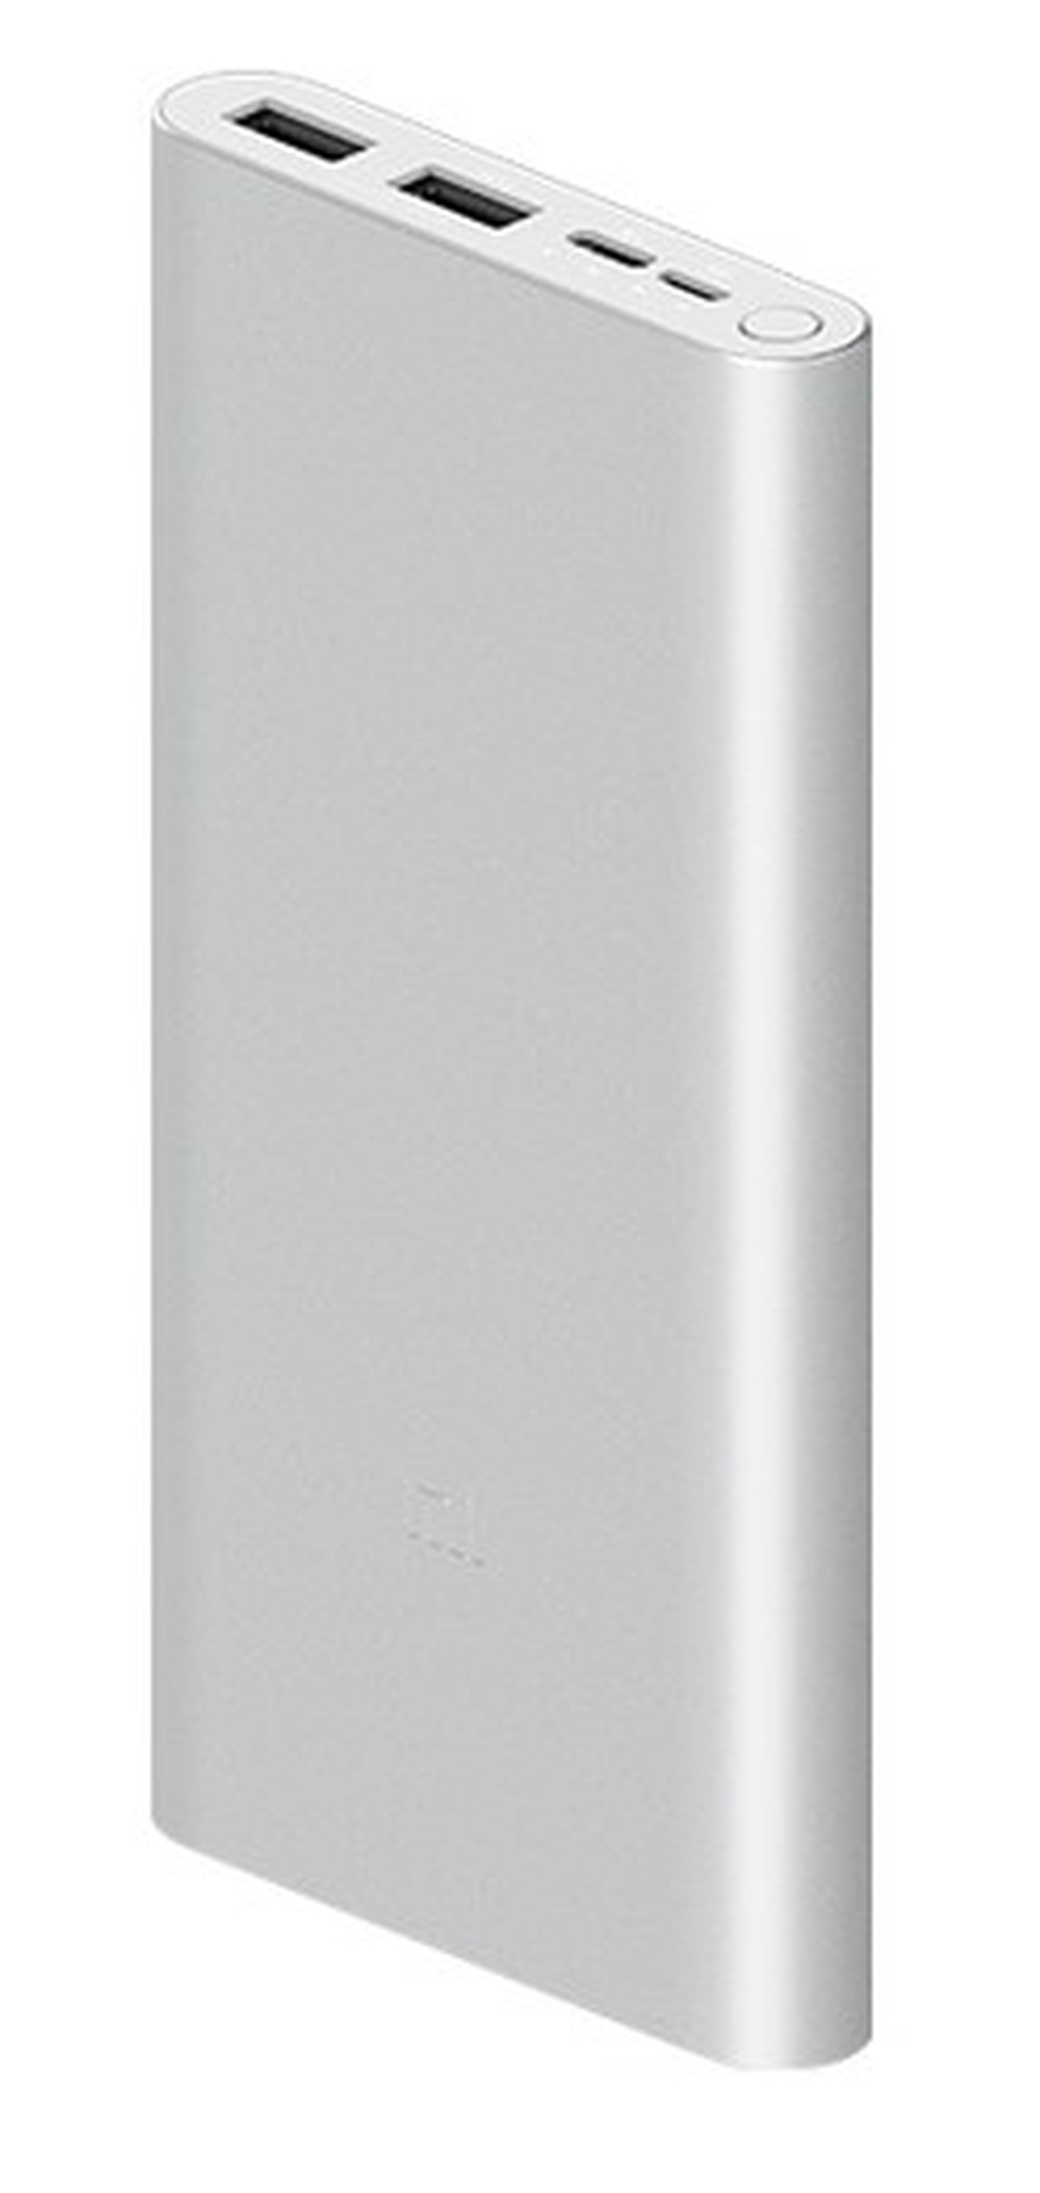 Xiaomi Mi Powerbank 3 10000